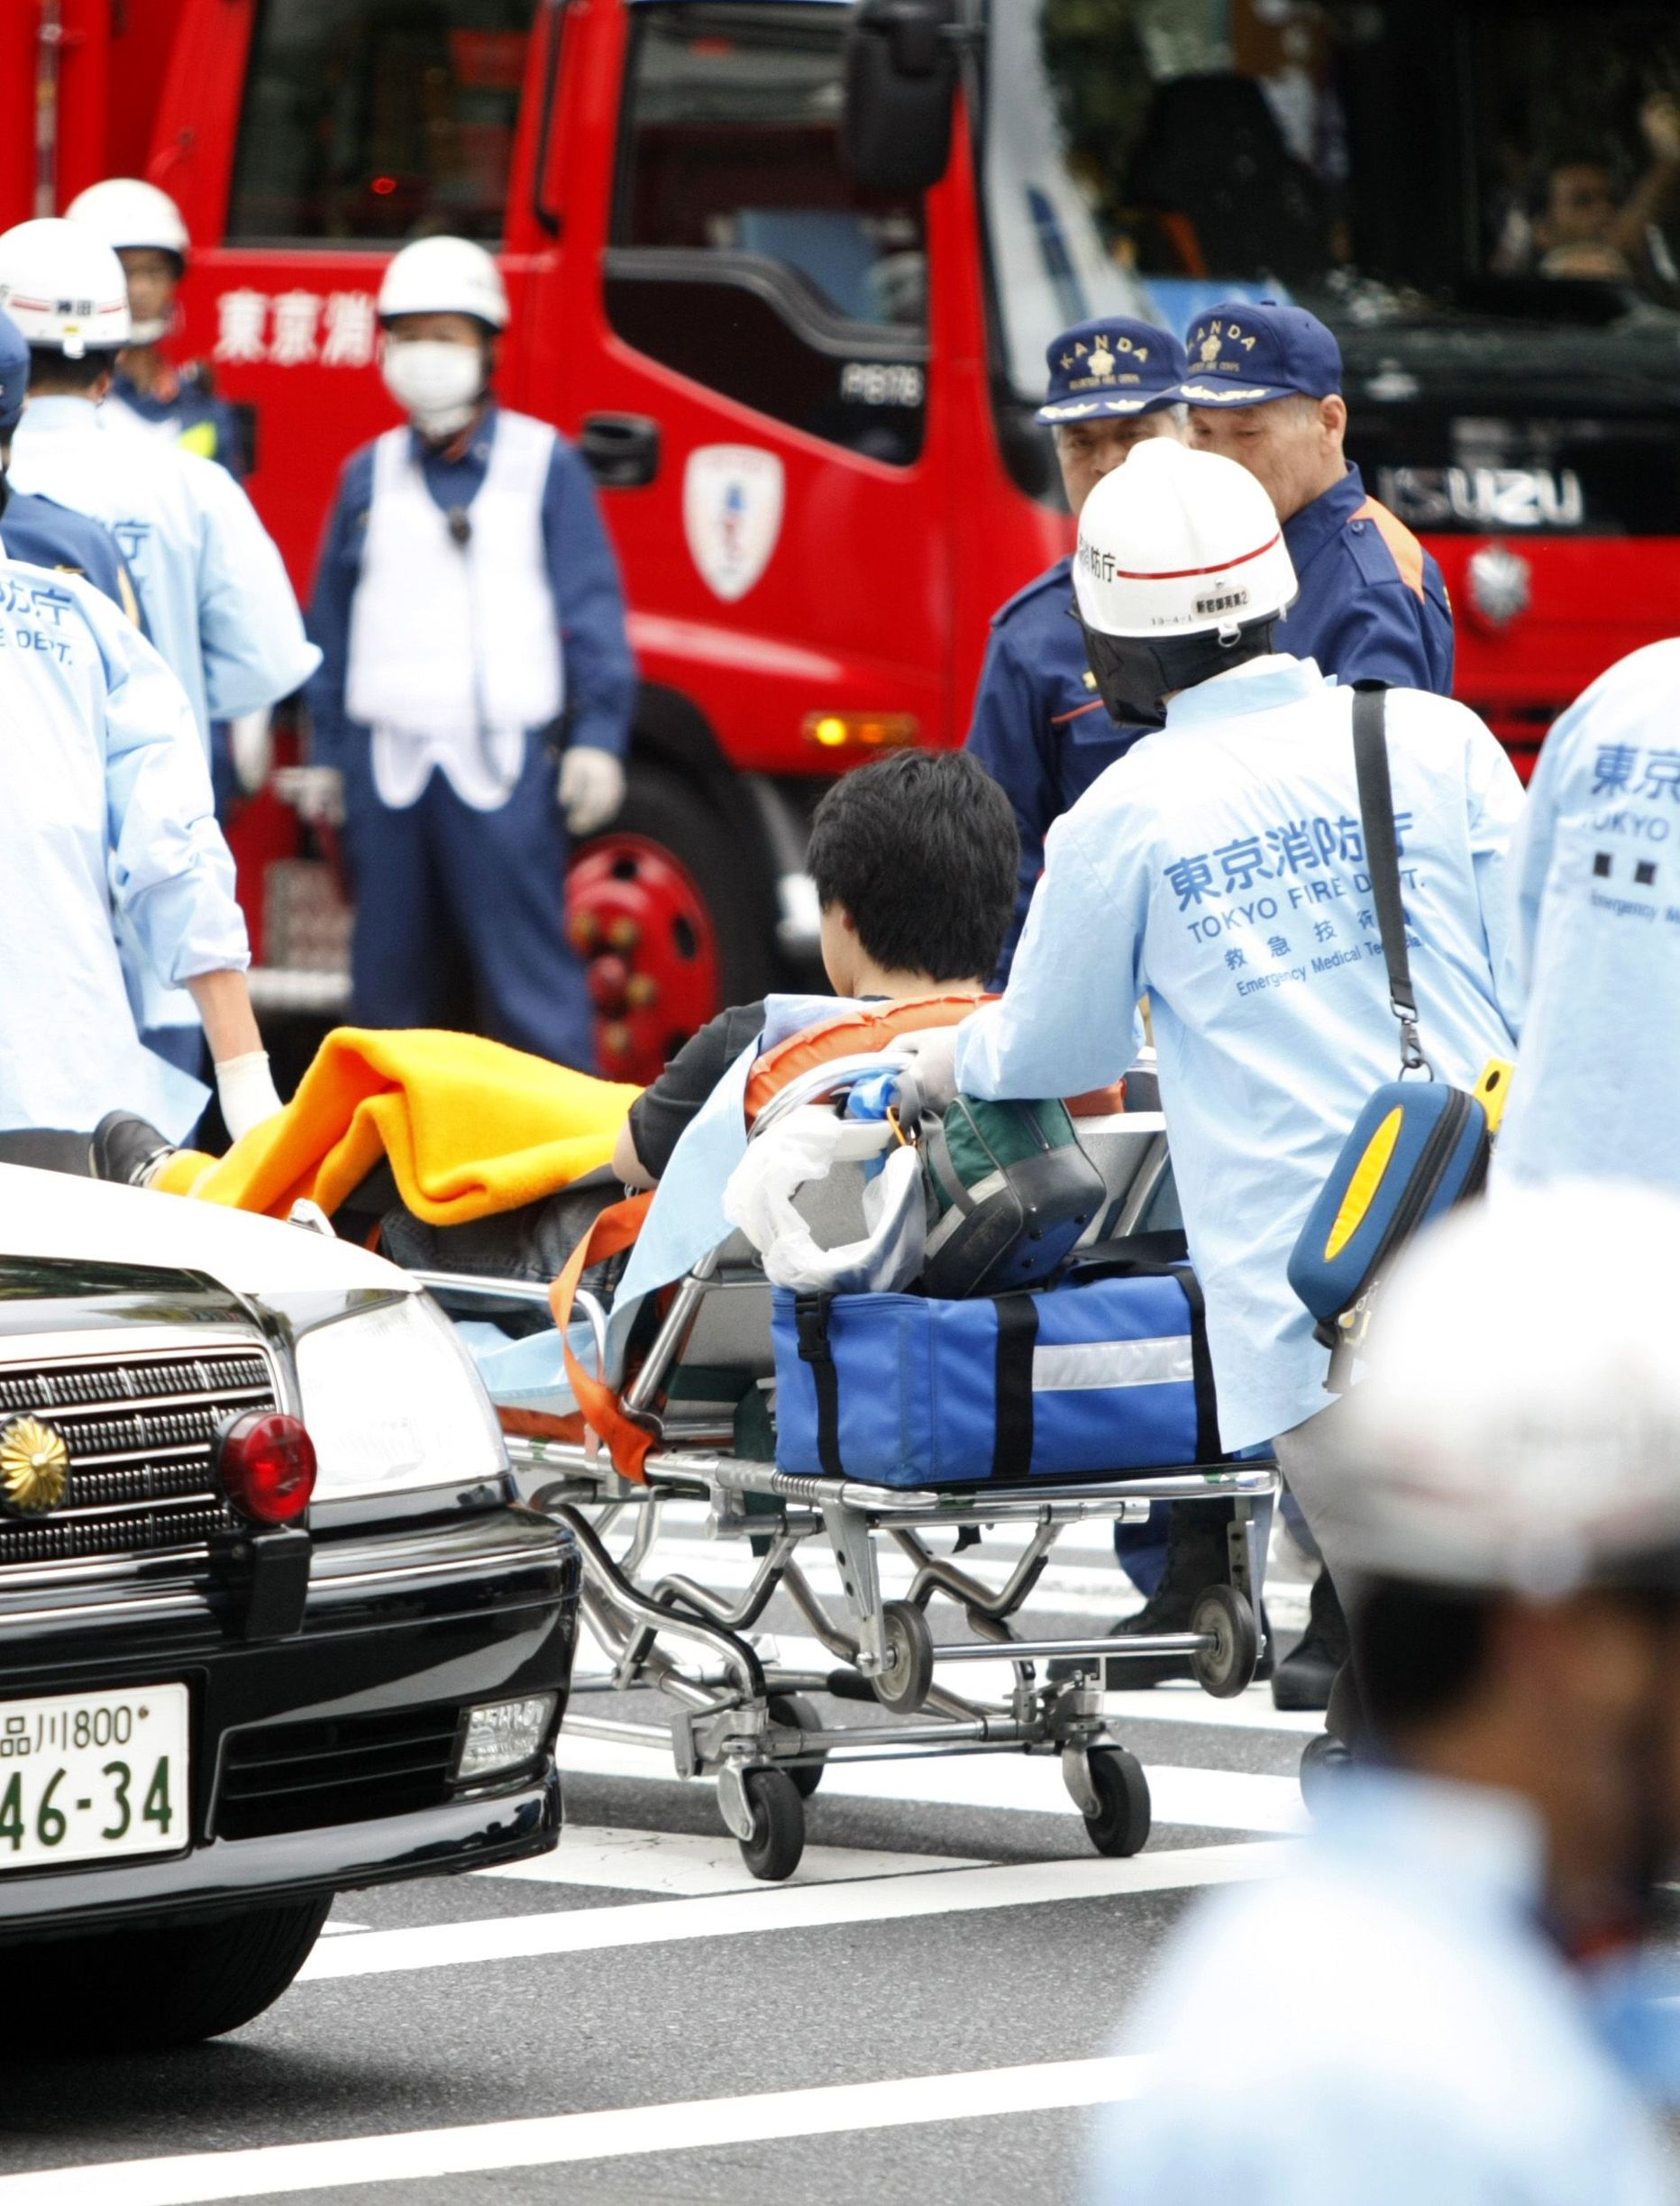 Jaapanis sõitis kiirabiauto juht 20 aastat ilma loata. Fotol Jaapani parameedikud